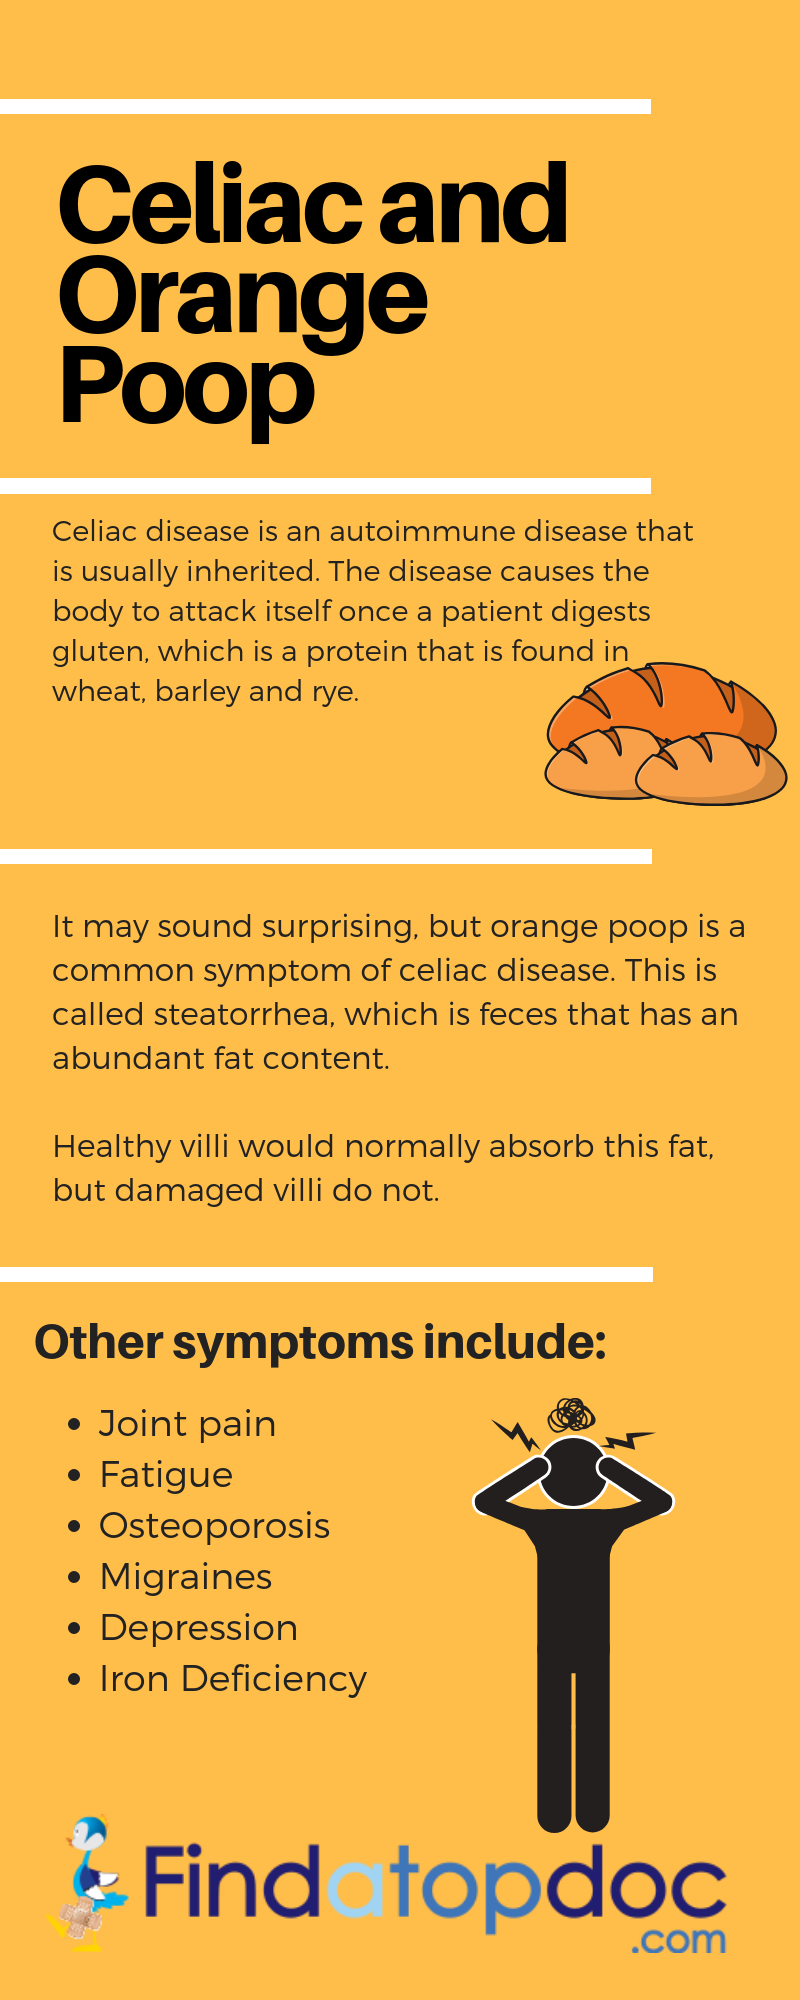 Orange Poop: A Sign of Celiac Disease?